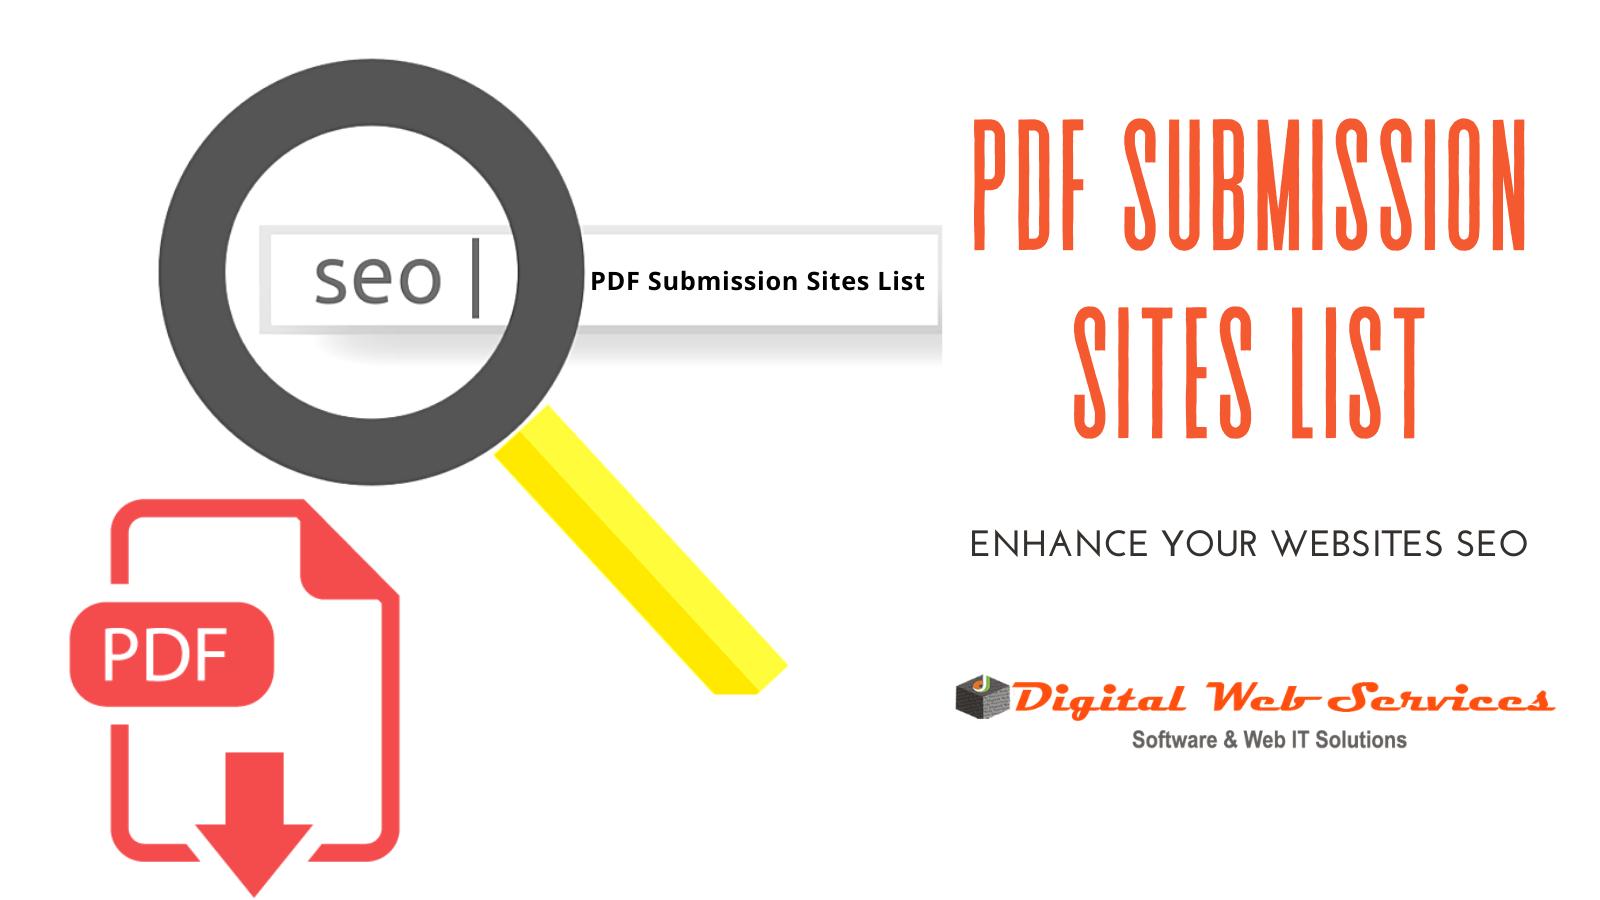 PDF SUBMISSION SITES LIST